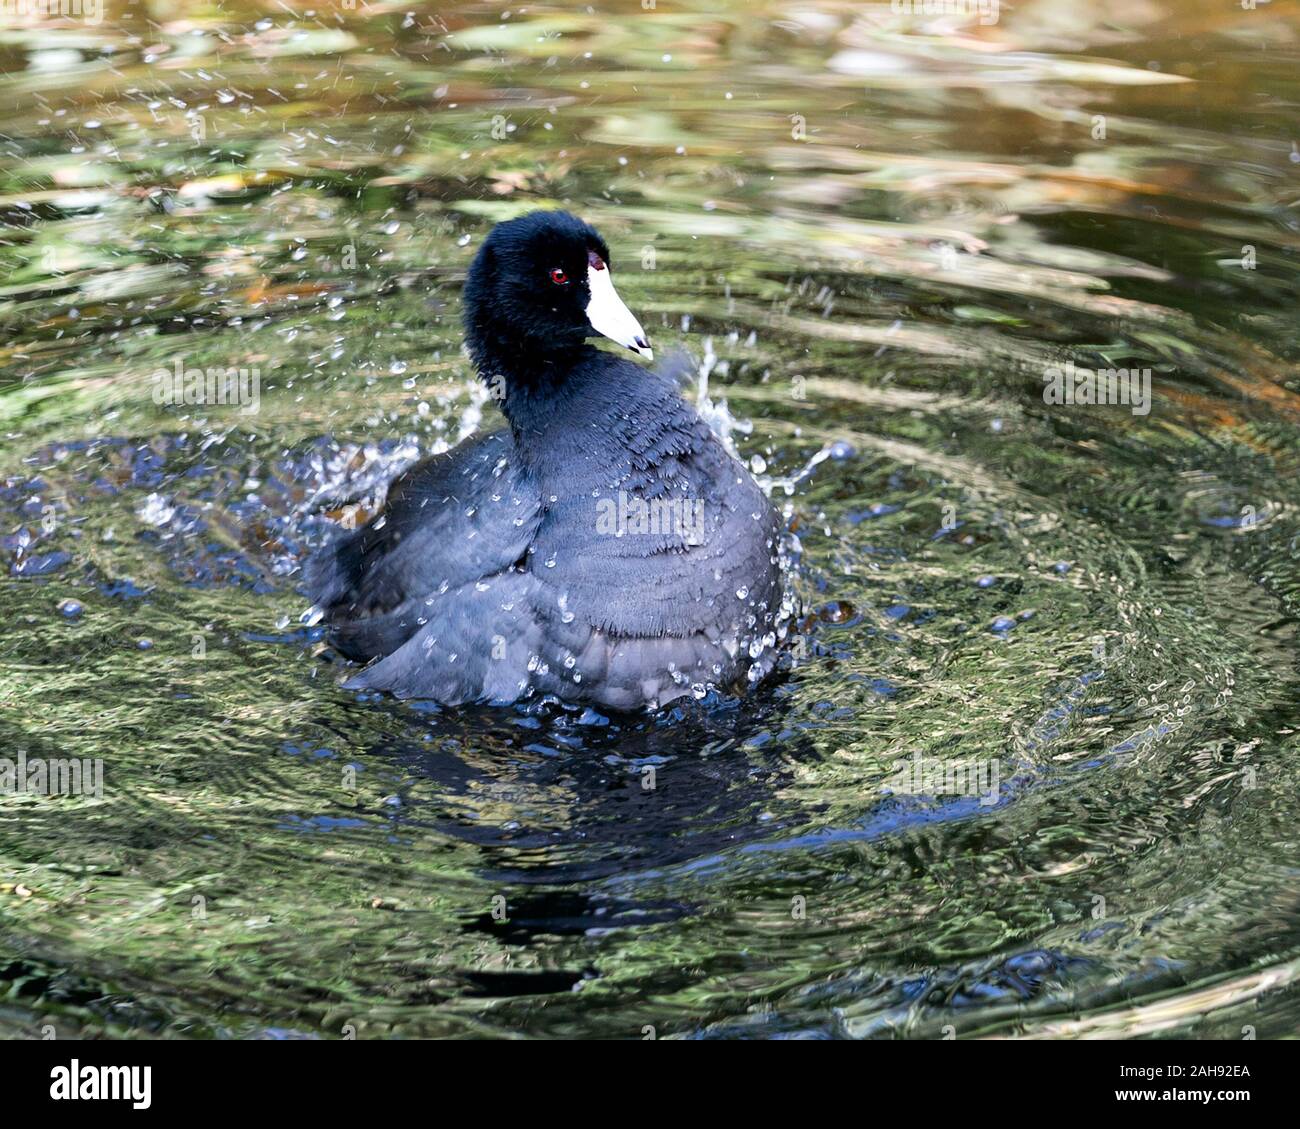 Schwarz Scoter oder Amerikanischen Scoter Vogel in der Nähe Profil ansehen im Wasser, mit Spritzwasser angezeigte flauschige Nass schwarzes Gefieder, schwarzer Kopf, Auge, wh Stockfoto